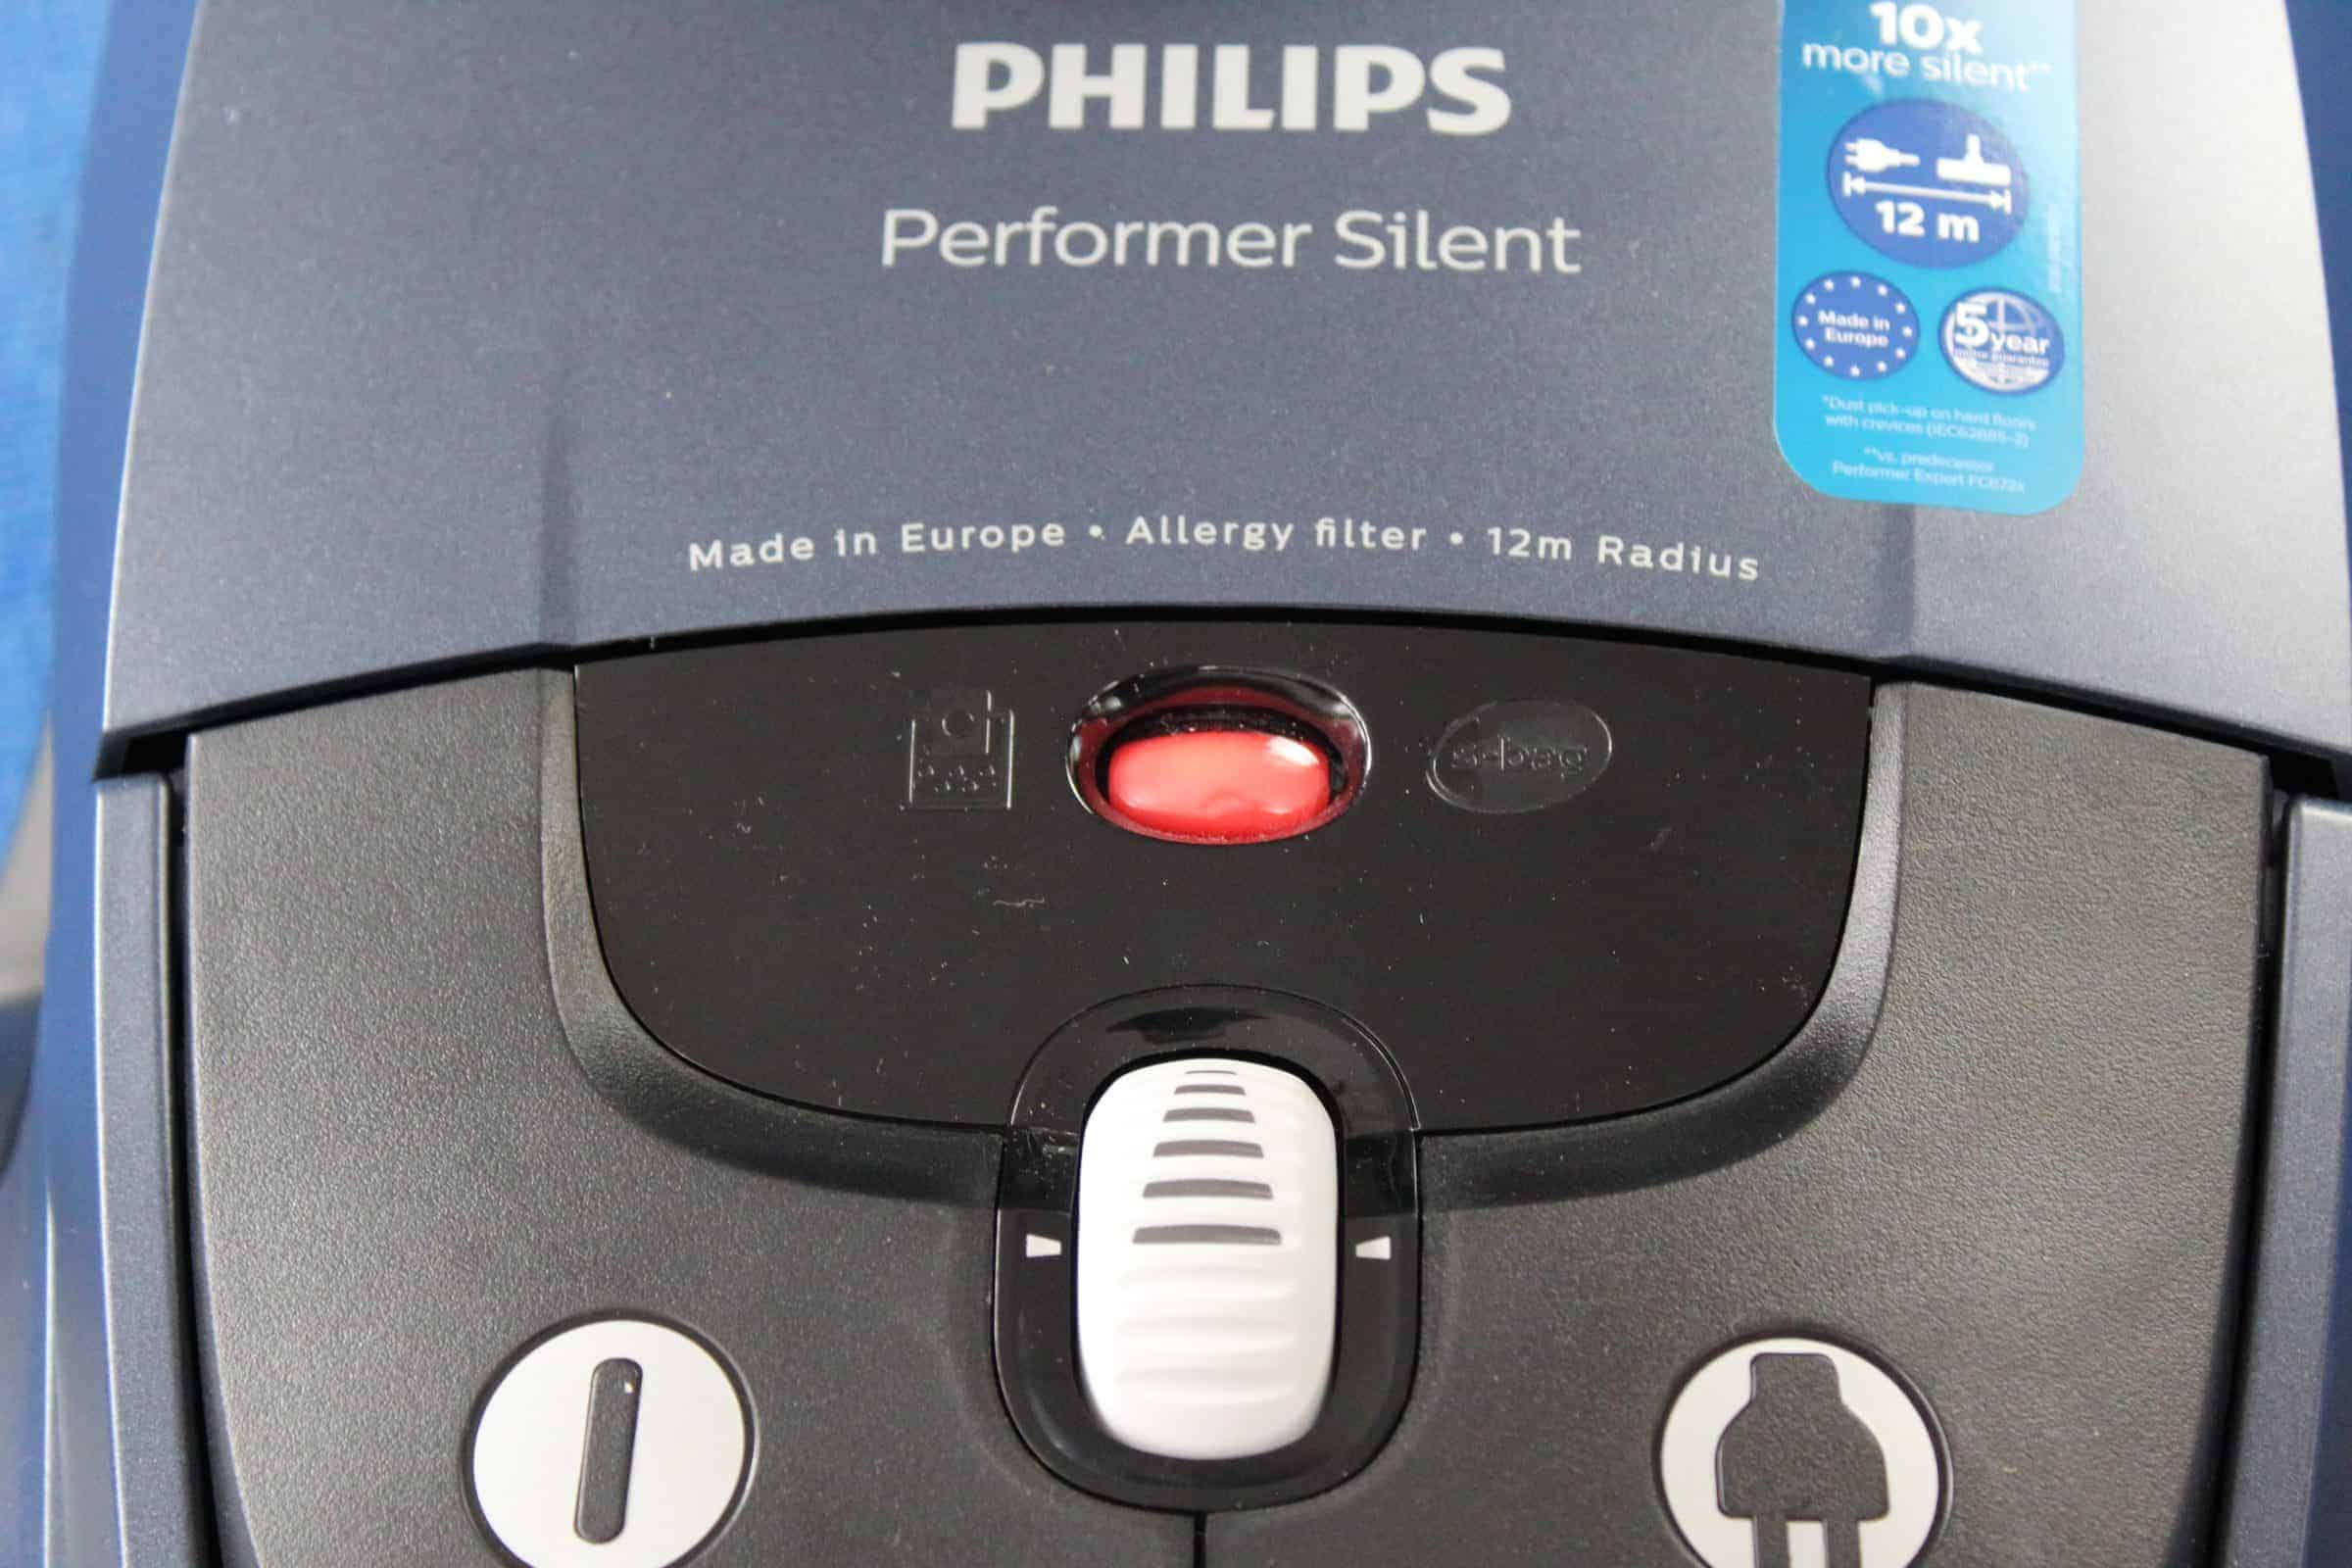 Staubsauger Test: Test Staubsauger Philips Performer Silent Fc878209